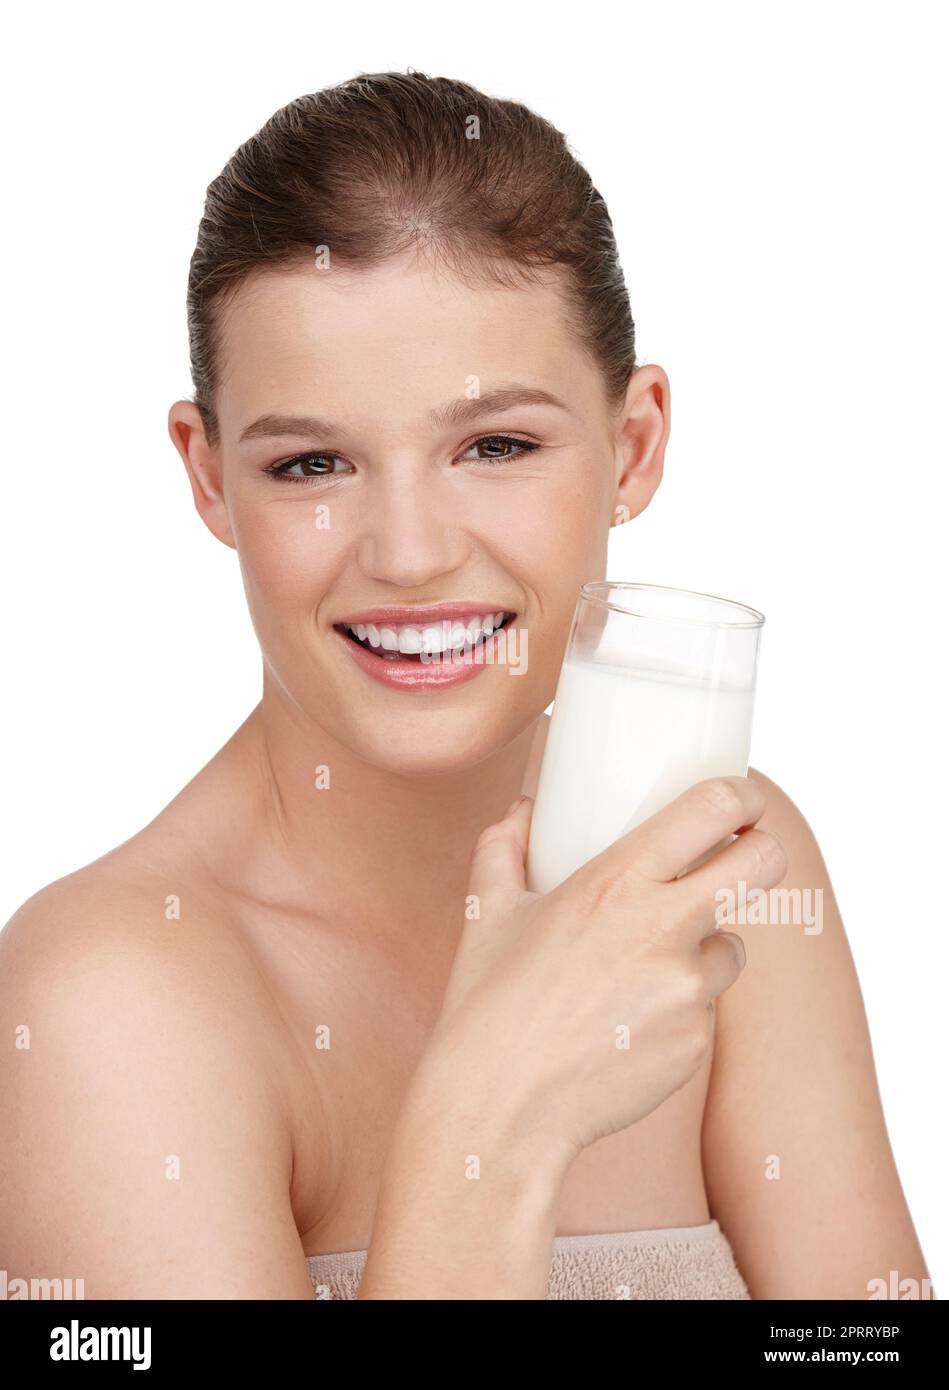 Milkt am besten für starke Knochen. Ein lächelndes Teenager-Mädchen, das ein Glas Milch in der Hand hält. Stockfoto